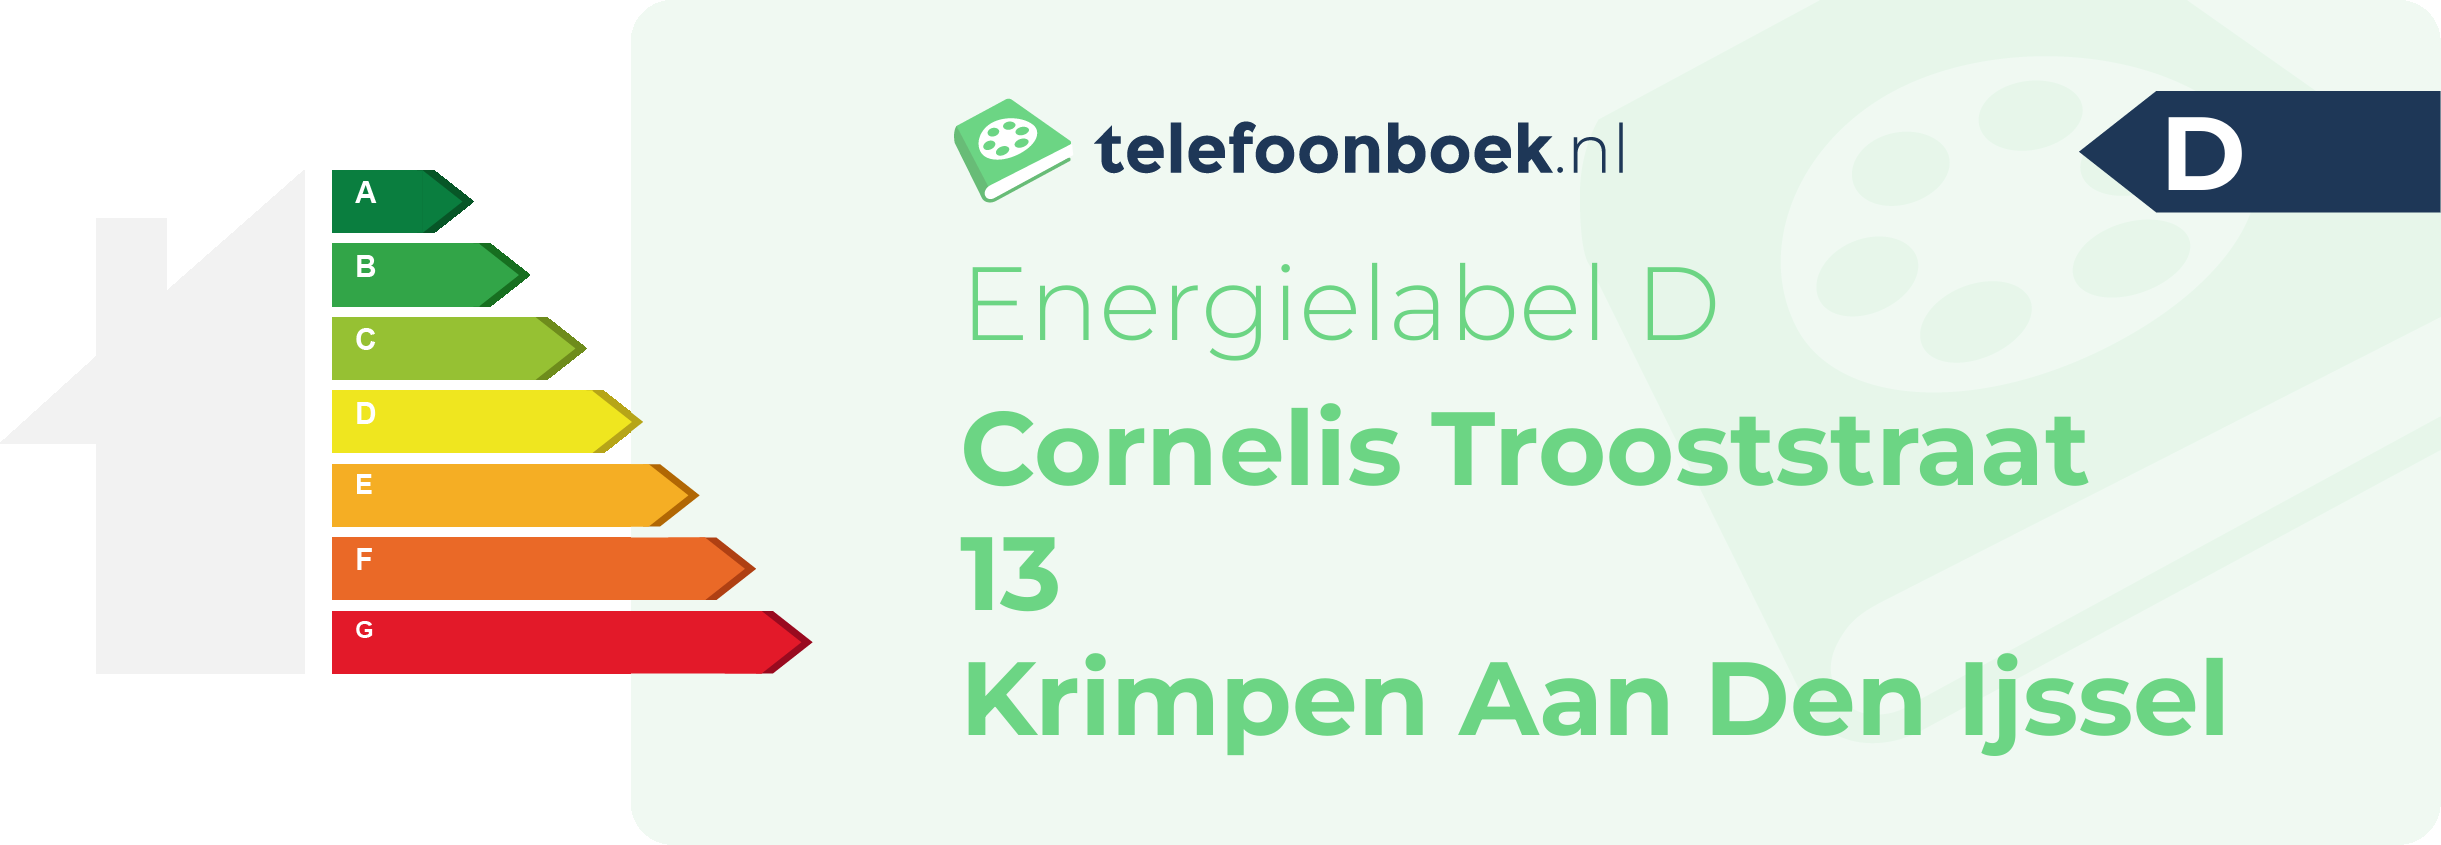 Energielabel Cornelis Trooststraat 13 Krimpen Aan Den Ijssel